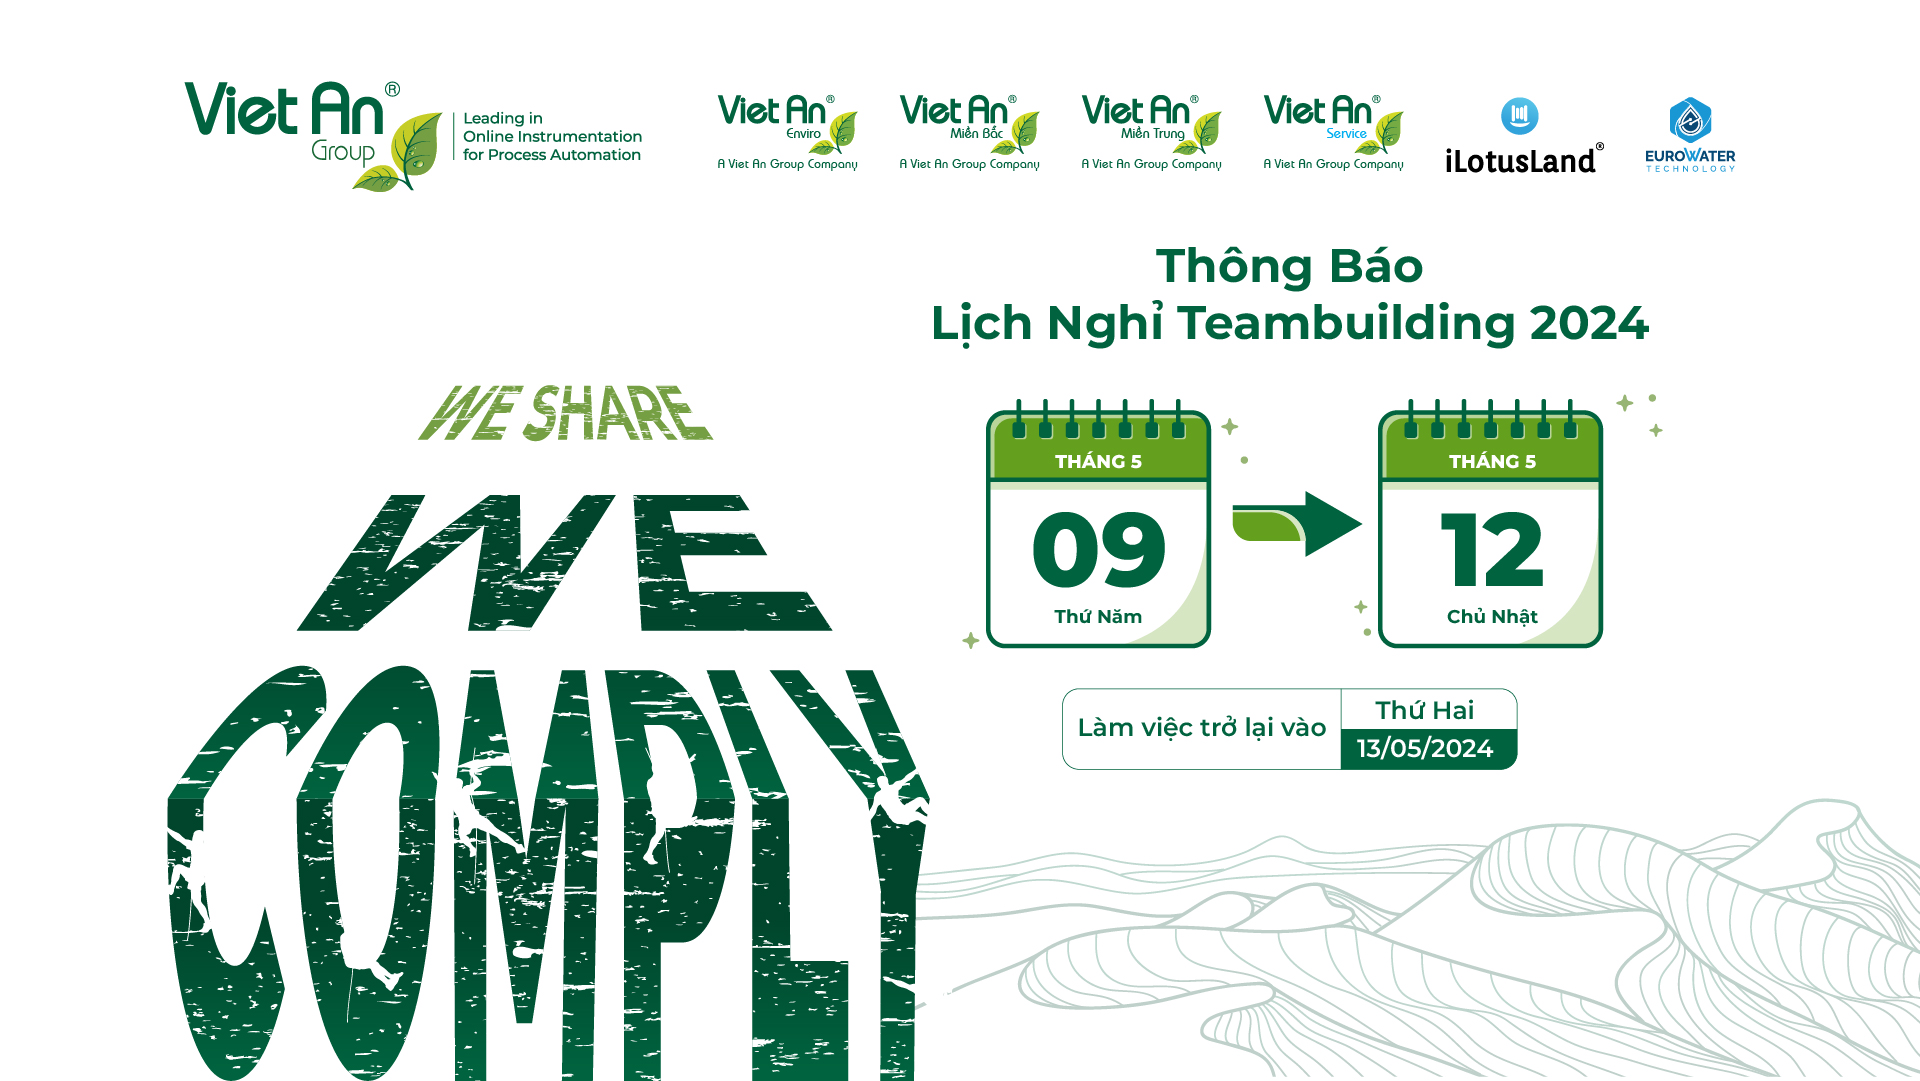 Việt An Group thông báo lịch nghỉ teambuilding 2024